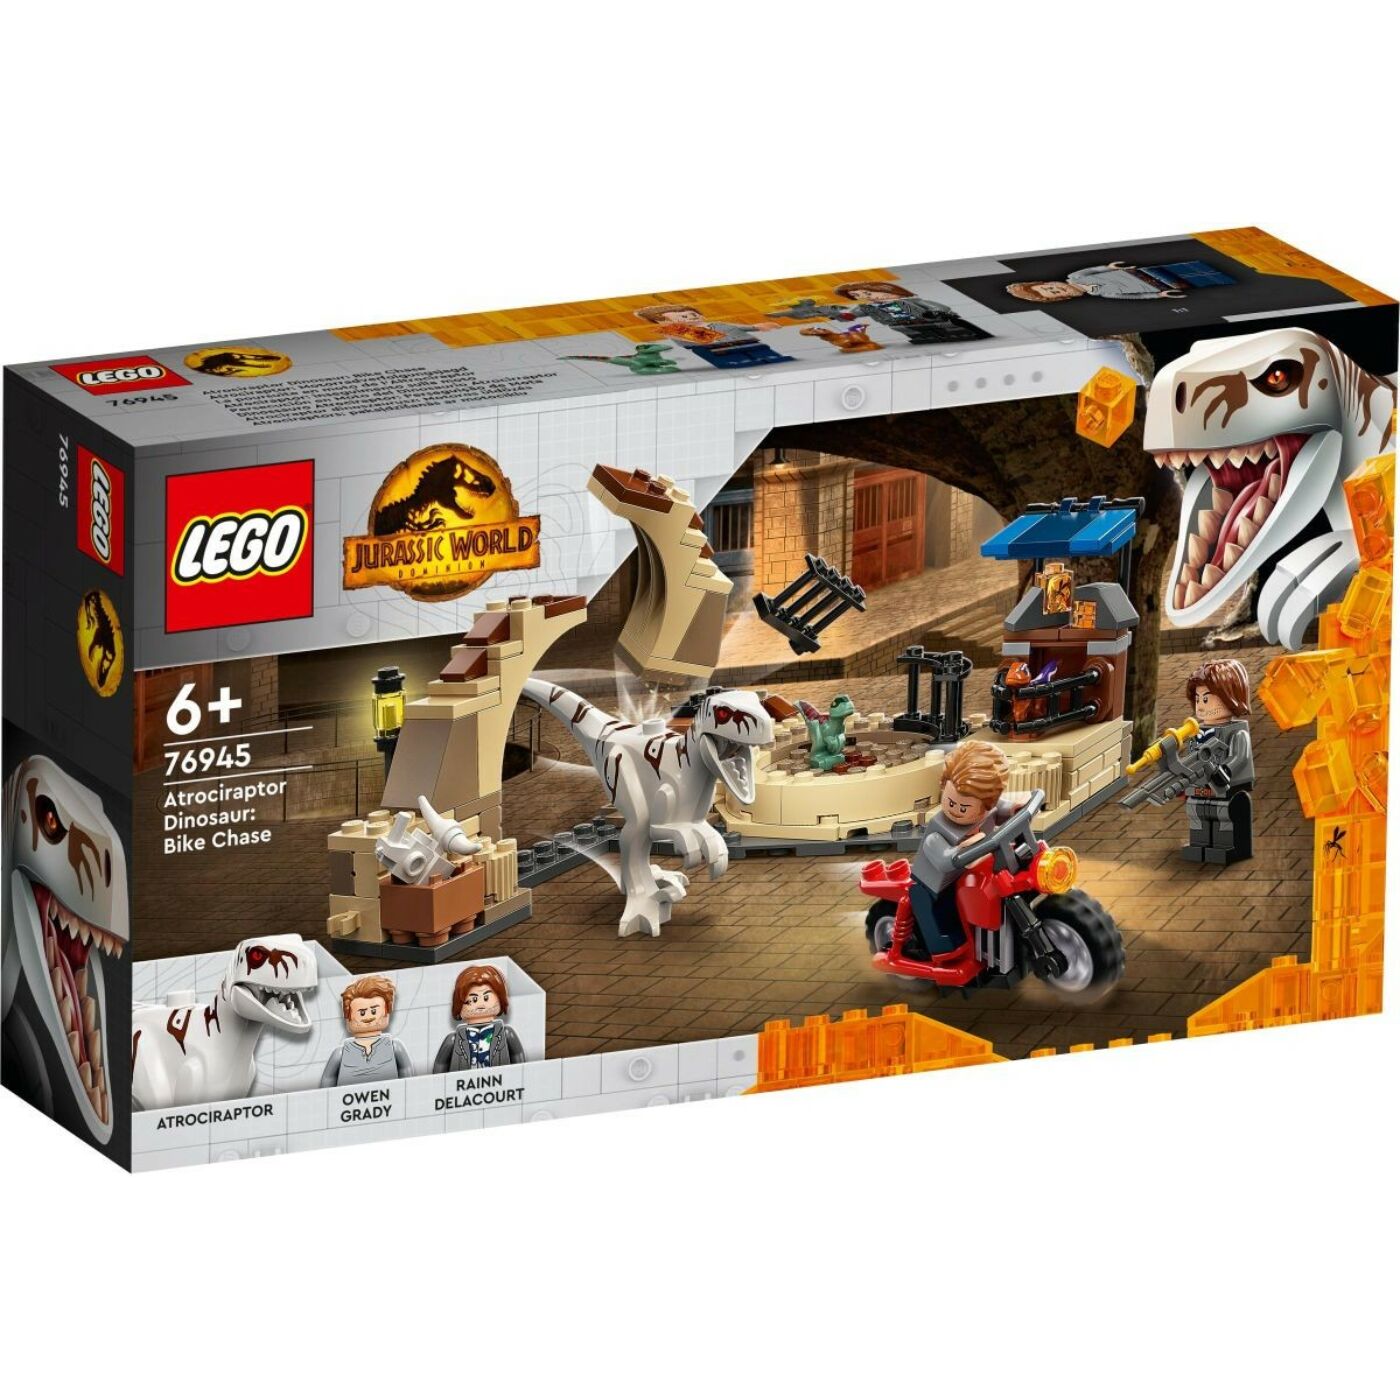 Lego Jurassic World Atrociraptor dinoszaurusz: Motoros üldözés